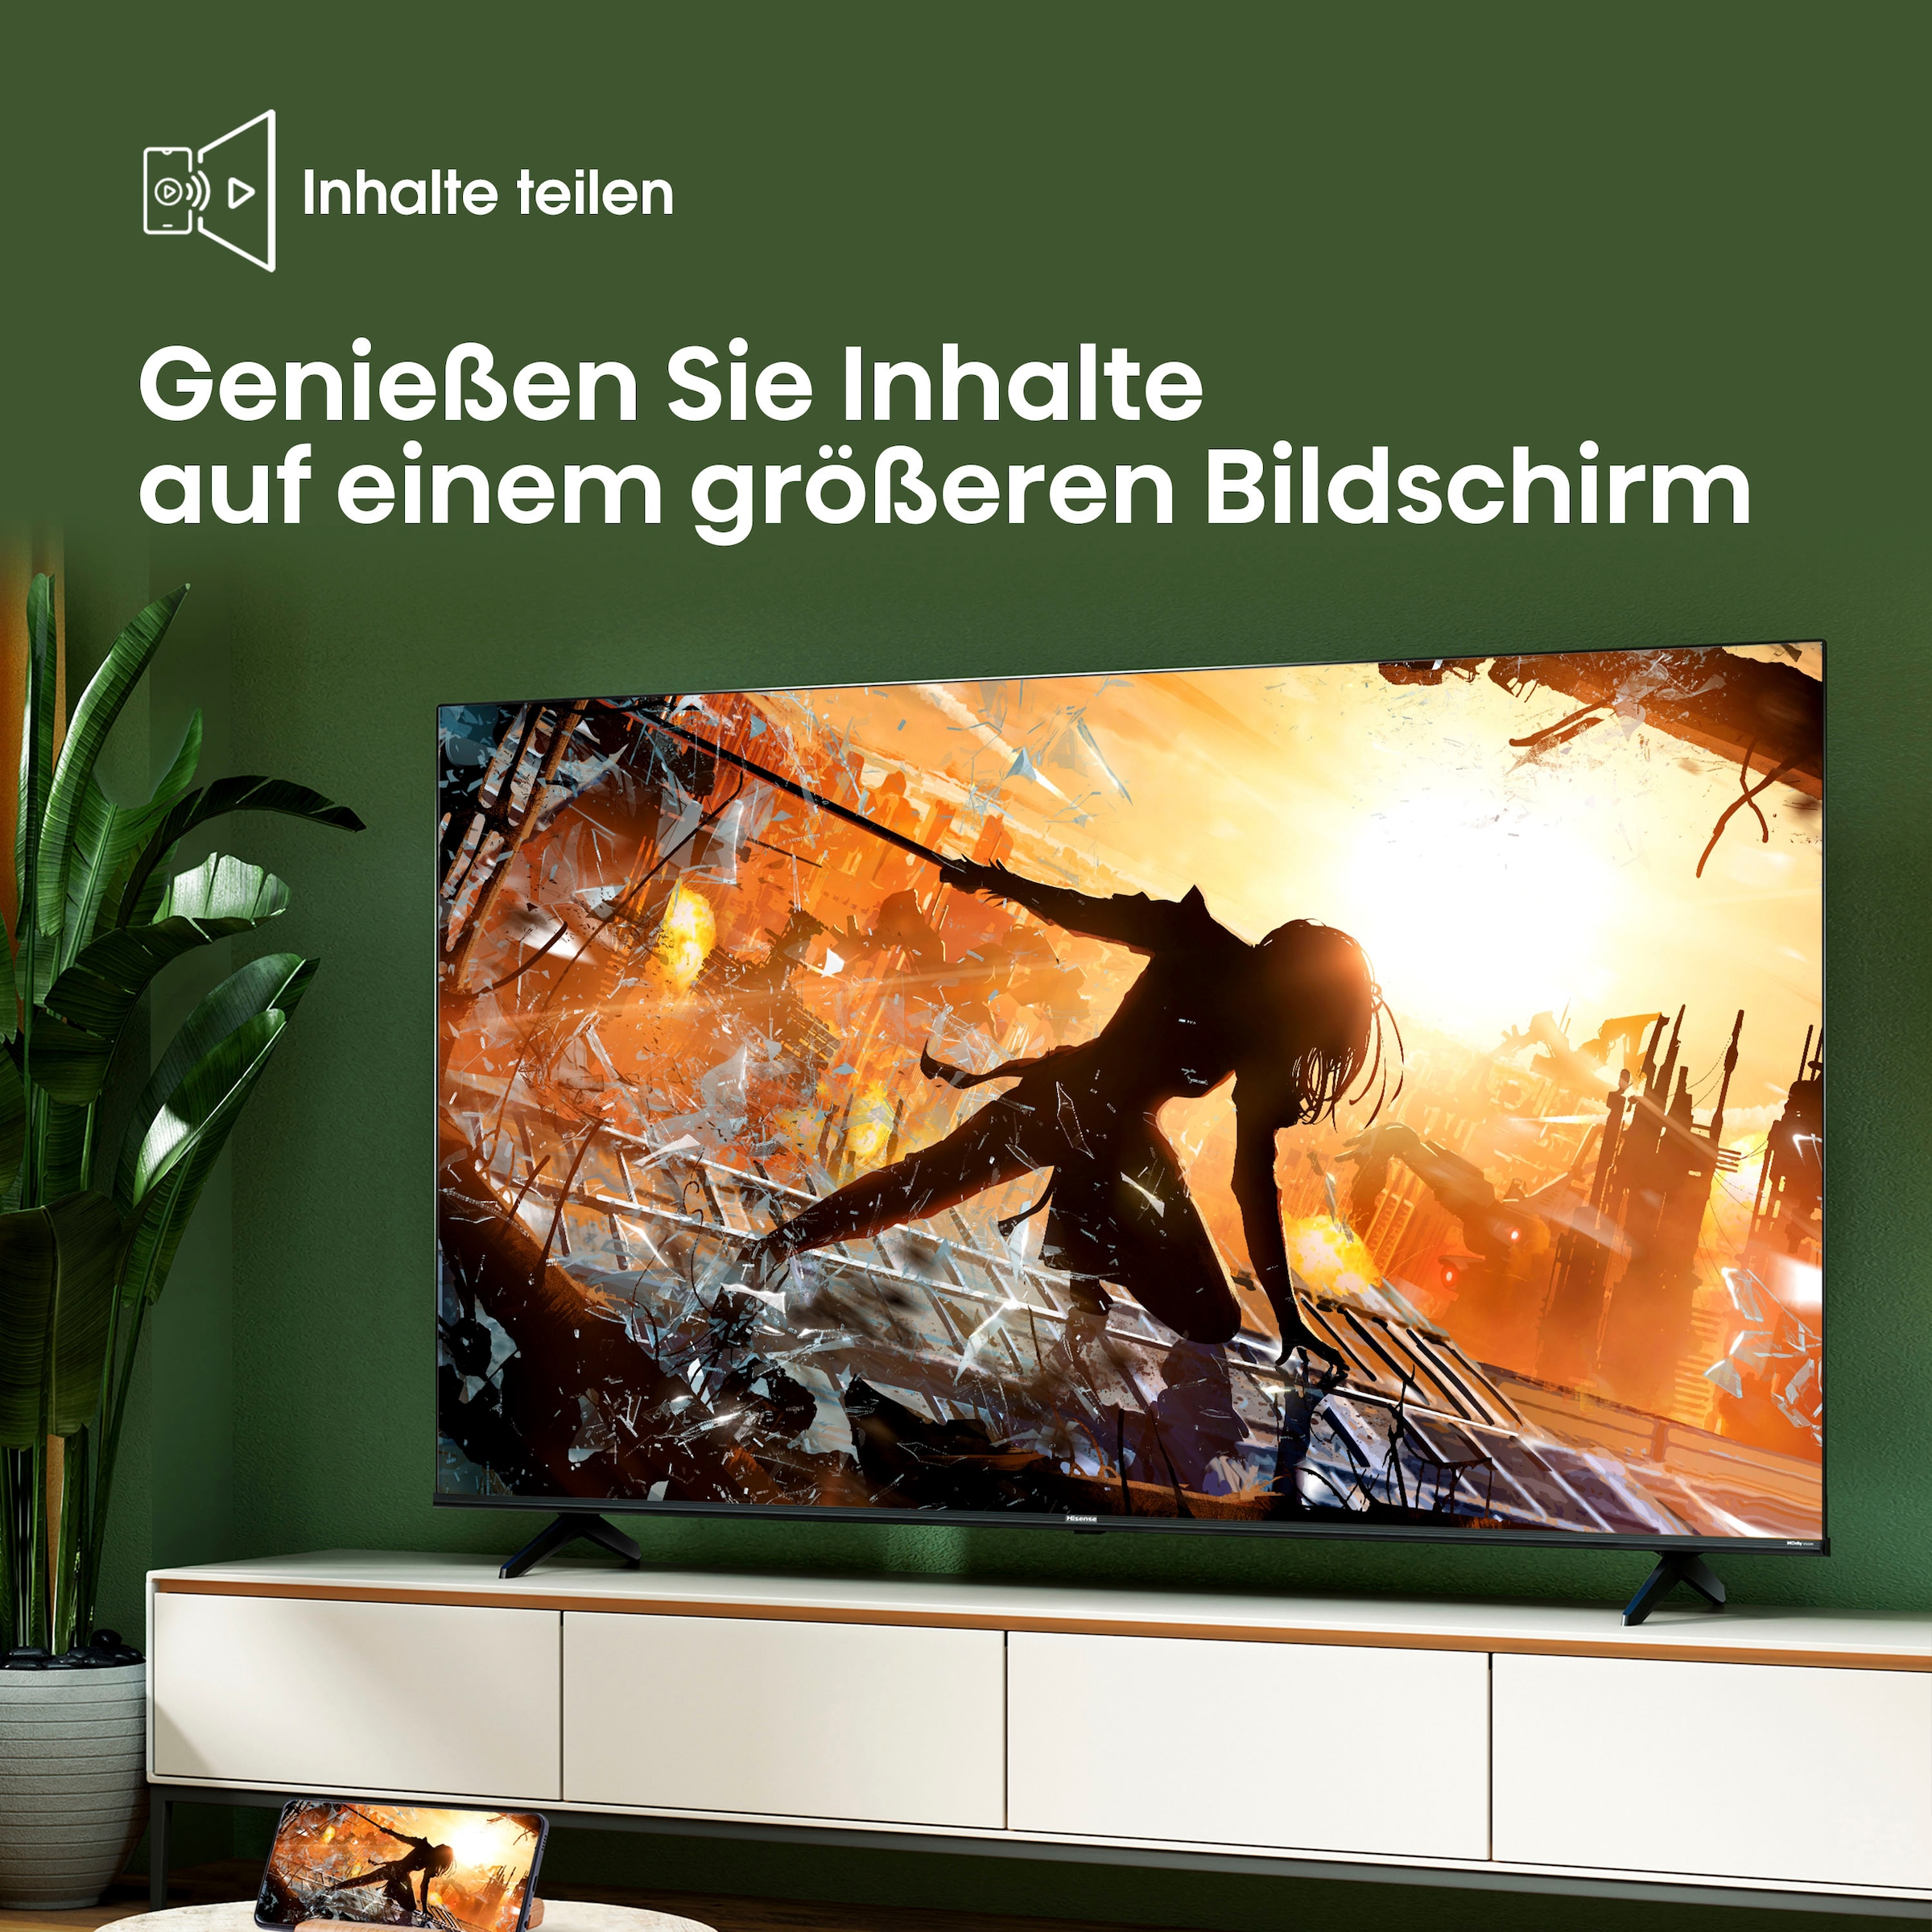 Hisense LED-Fernseher, 139 cm/55 Zoll, 4K Ultra HD, Smart-TV, Smart-TV, Dolby Vision, Triple Tuner DVB-C/S/S2/T/T2